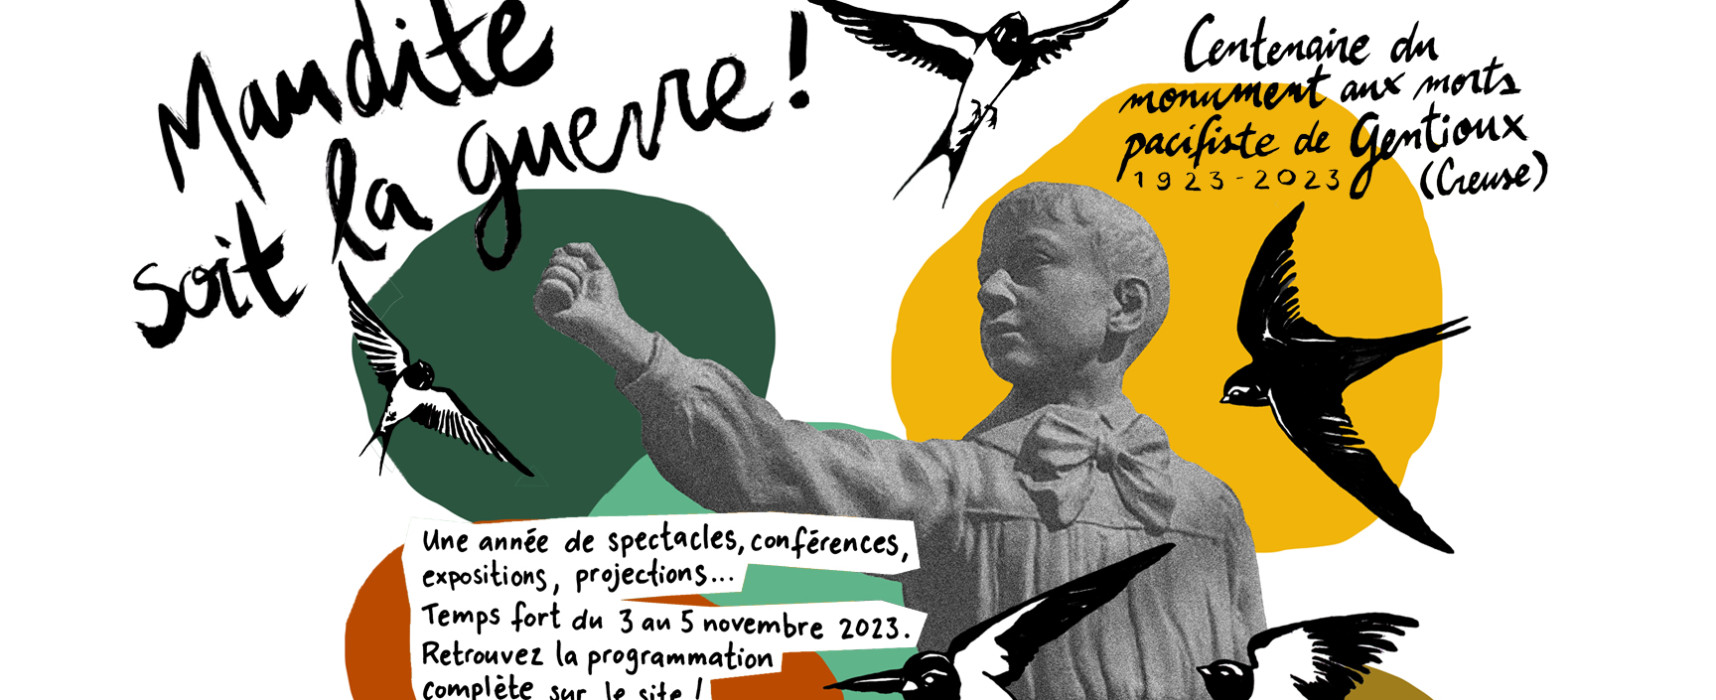 Programme du 5 au 11 novembre – Centenaire du monument aux morts pacifiste de Gentioux 1923 – 2023 – Maudite soit la guerre !